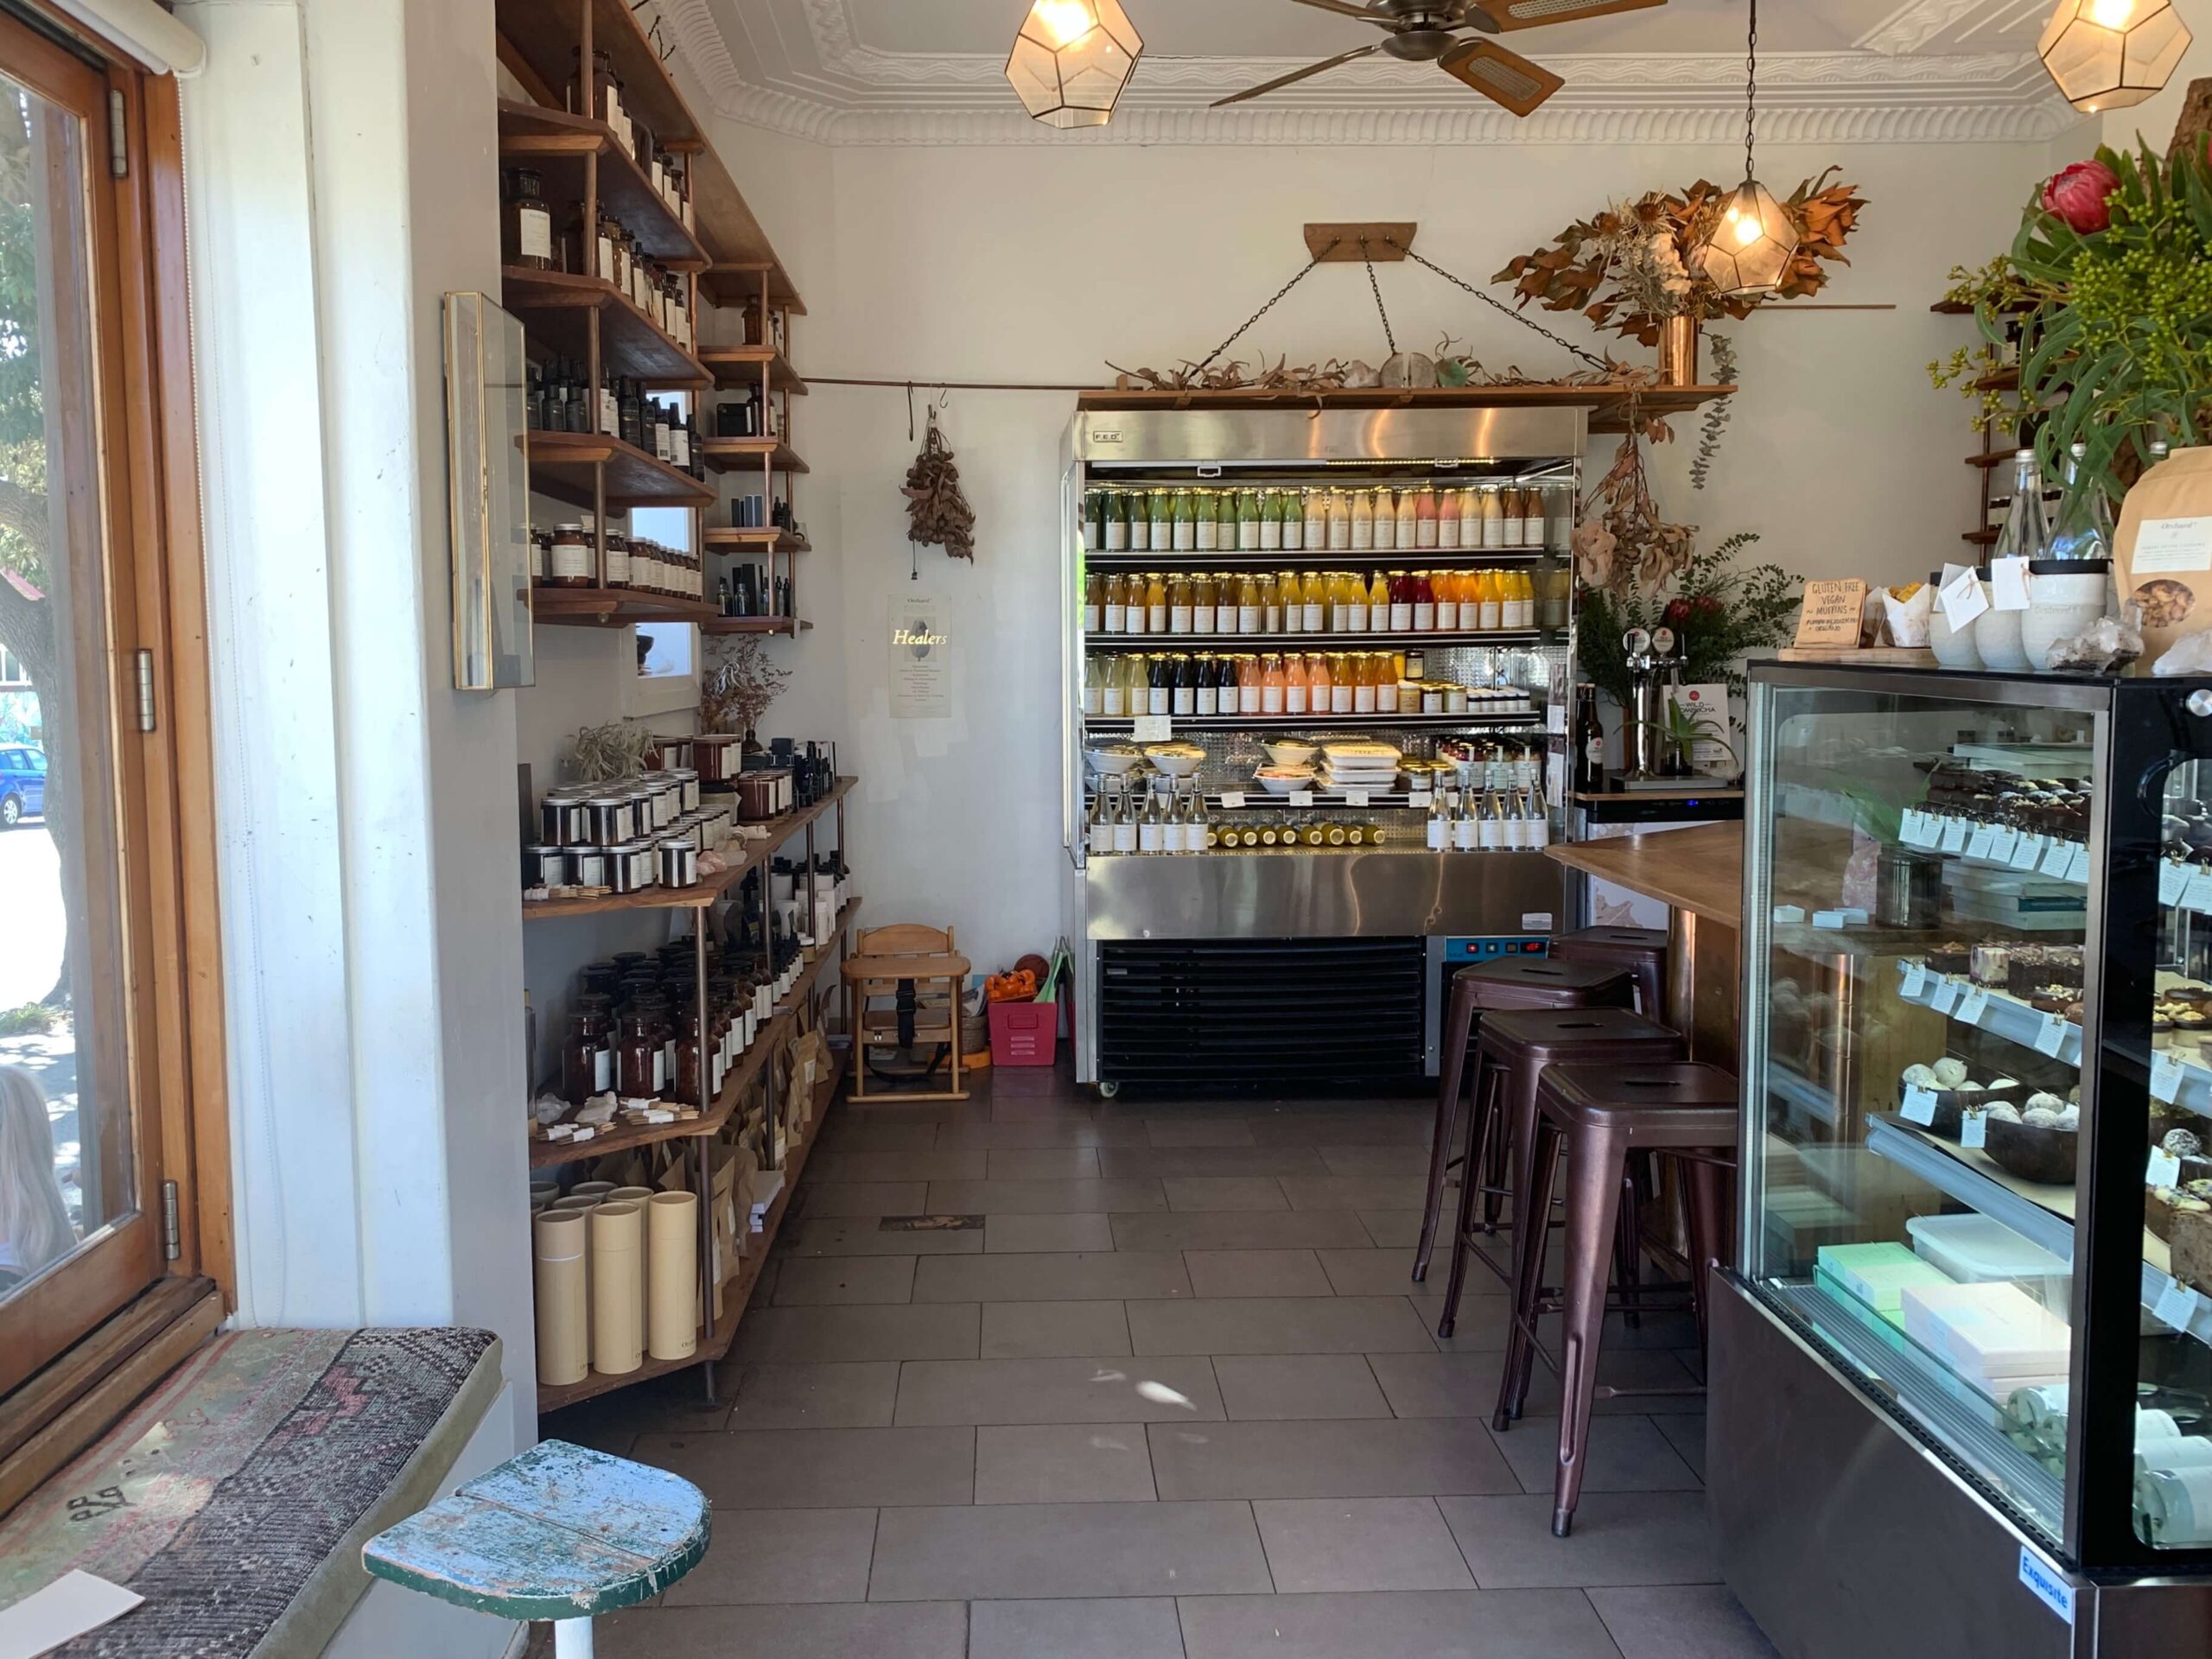 シドニーのカフェ【Orchard St.】の店内の様子を撮影した写真